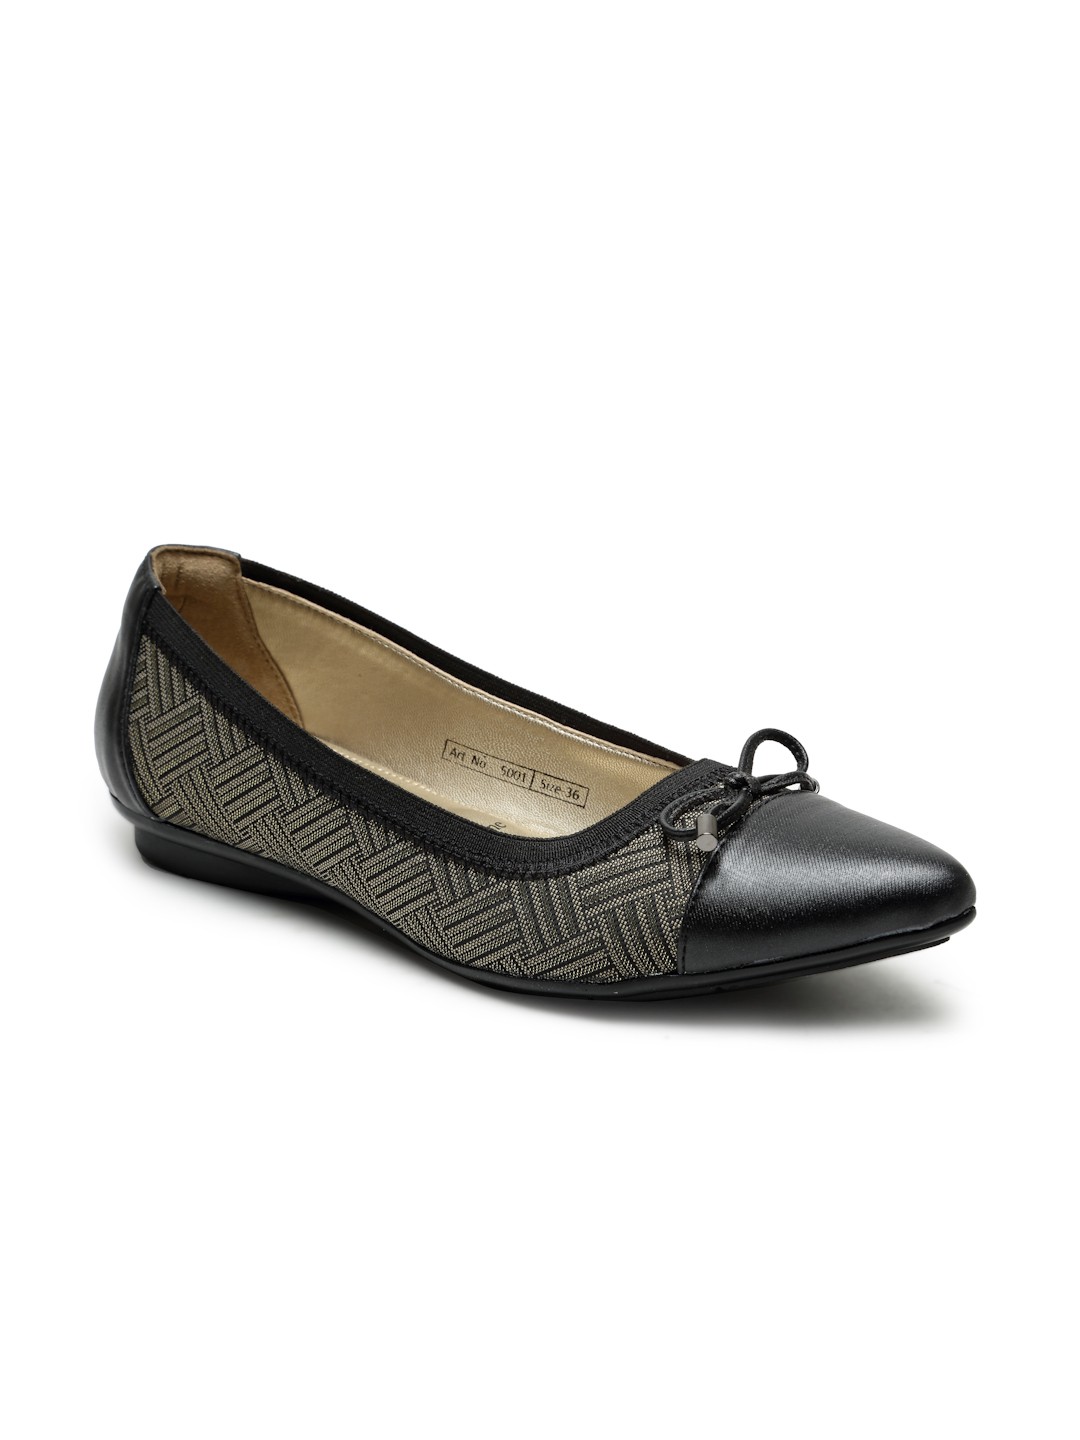 Buy Von Wellx Germany Comfort Women's Black Casual Shoes Lisa Online in Surat